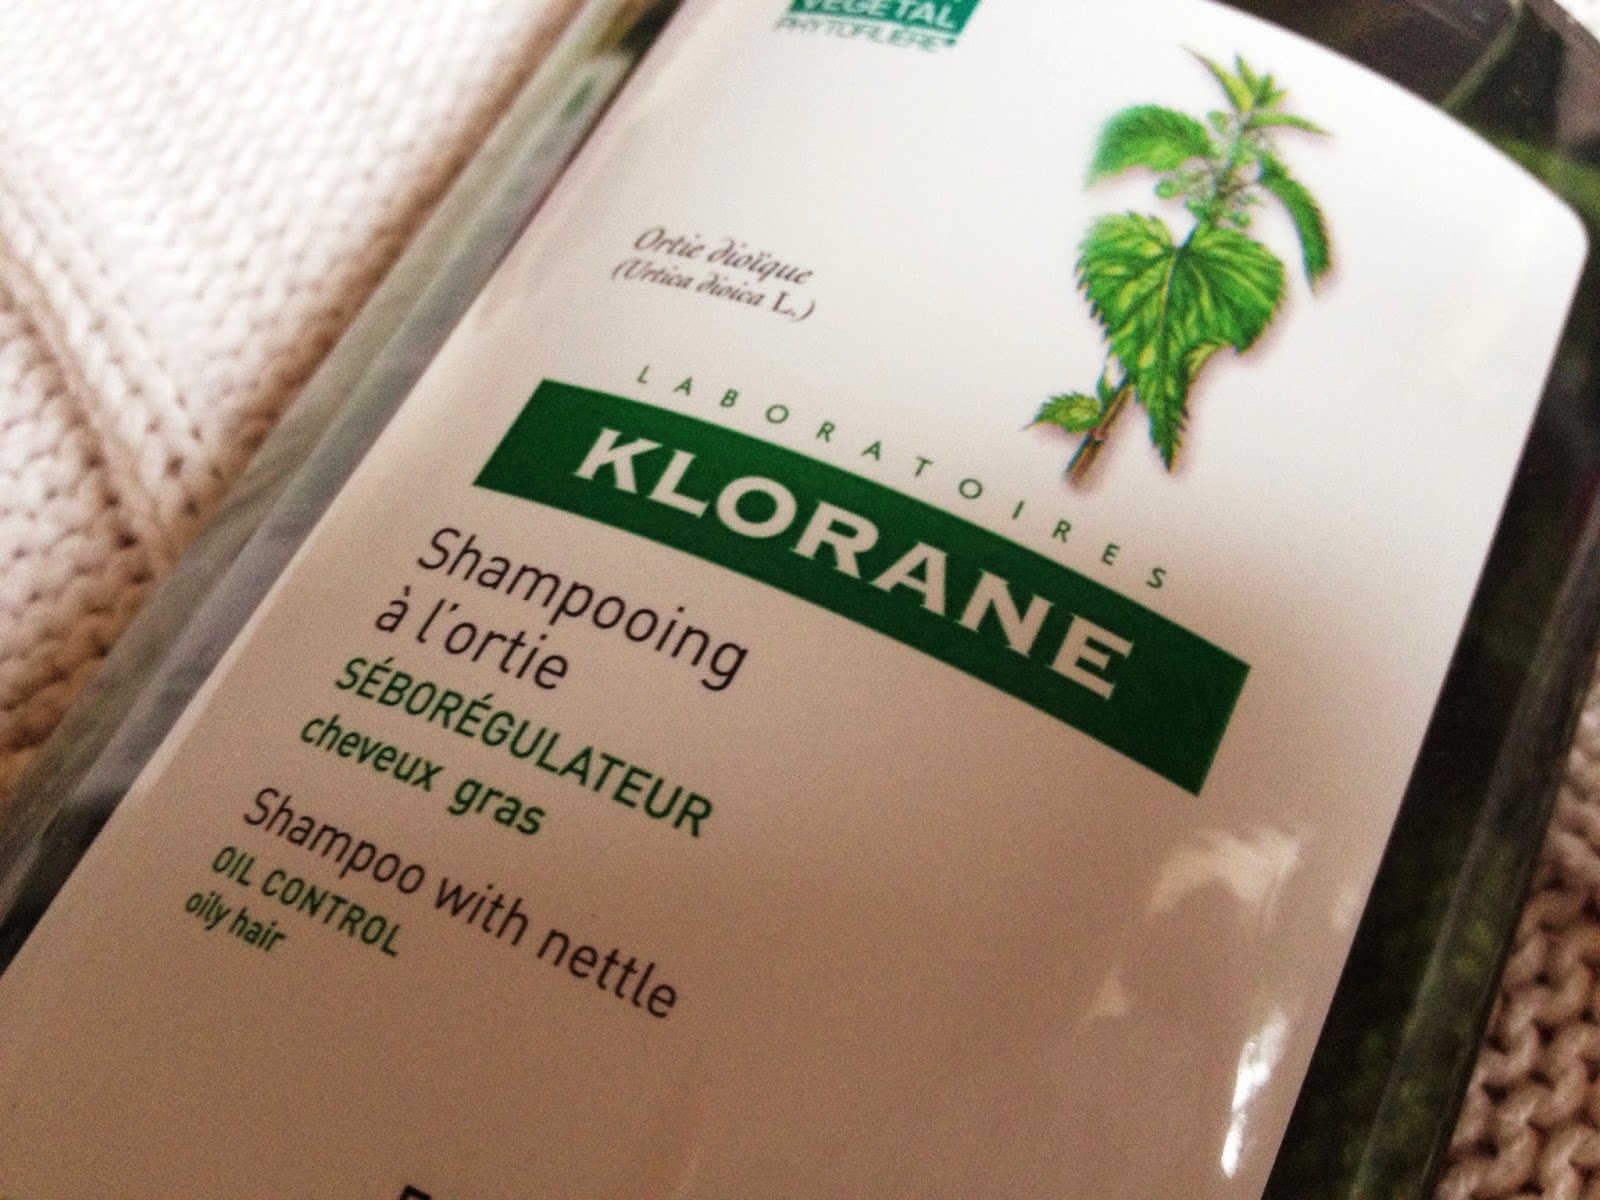 KLORANE Nettle Shampoo, beauty blog, shampoo for oily hair, KLORANE shampoo, eco friendly shampoo